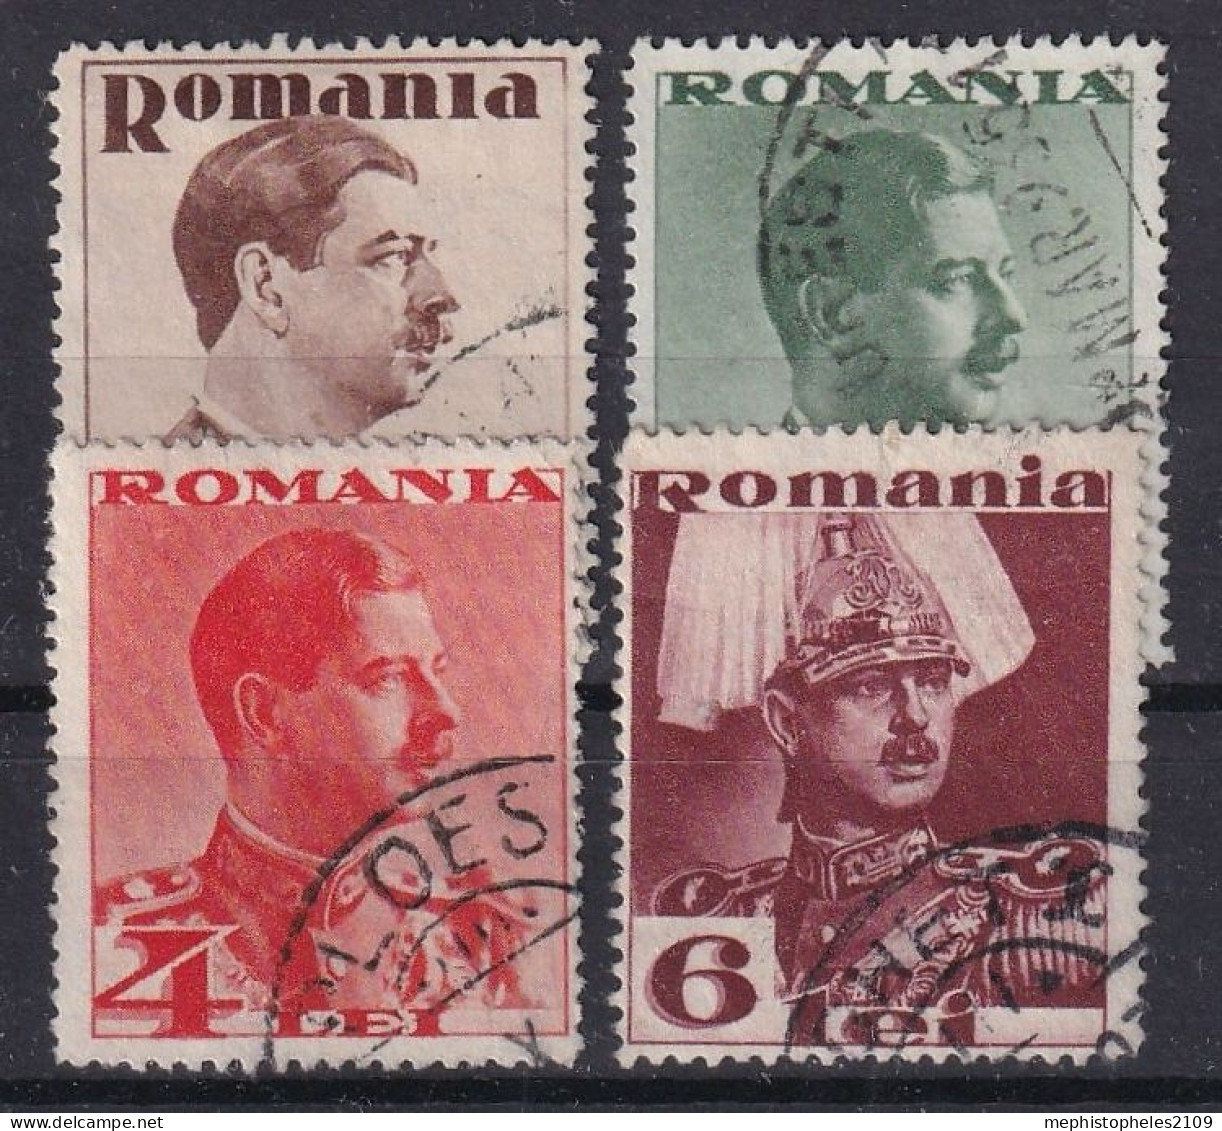 ROMANIA 1935 - MLH - Sc# 447, 449, 451, 453 - Unused Stamps